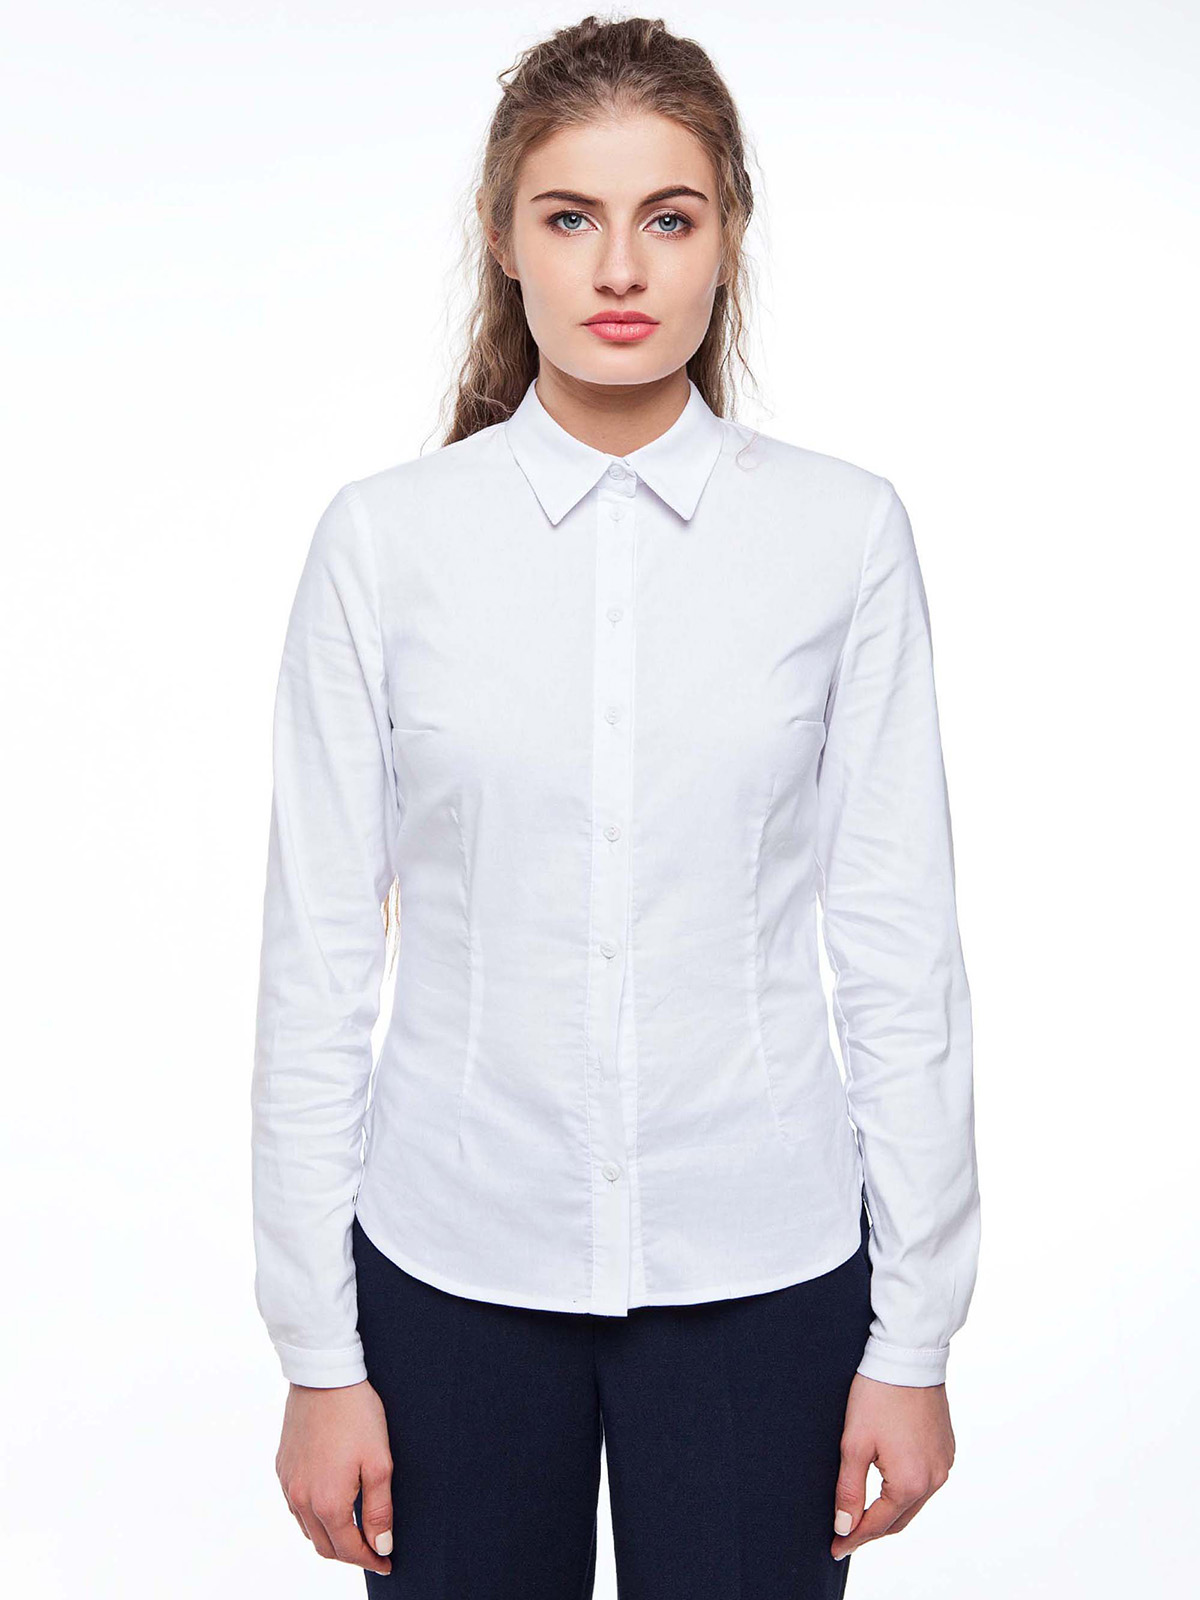 Белые приталенные рубашки женские